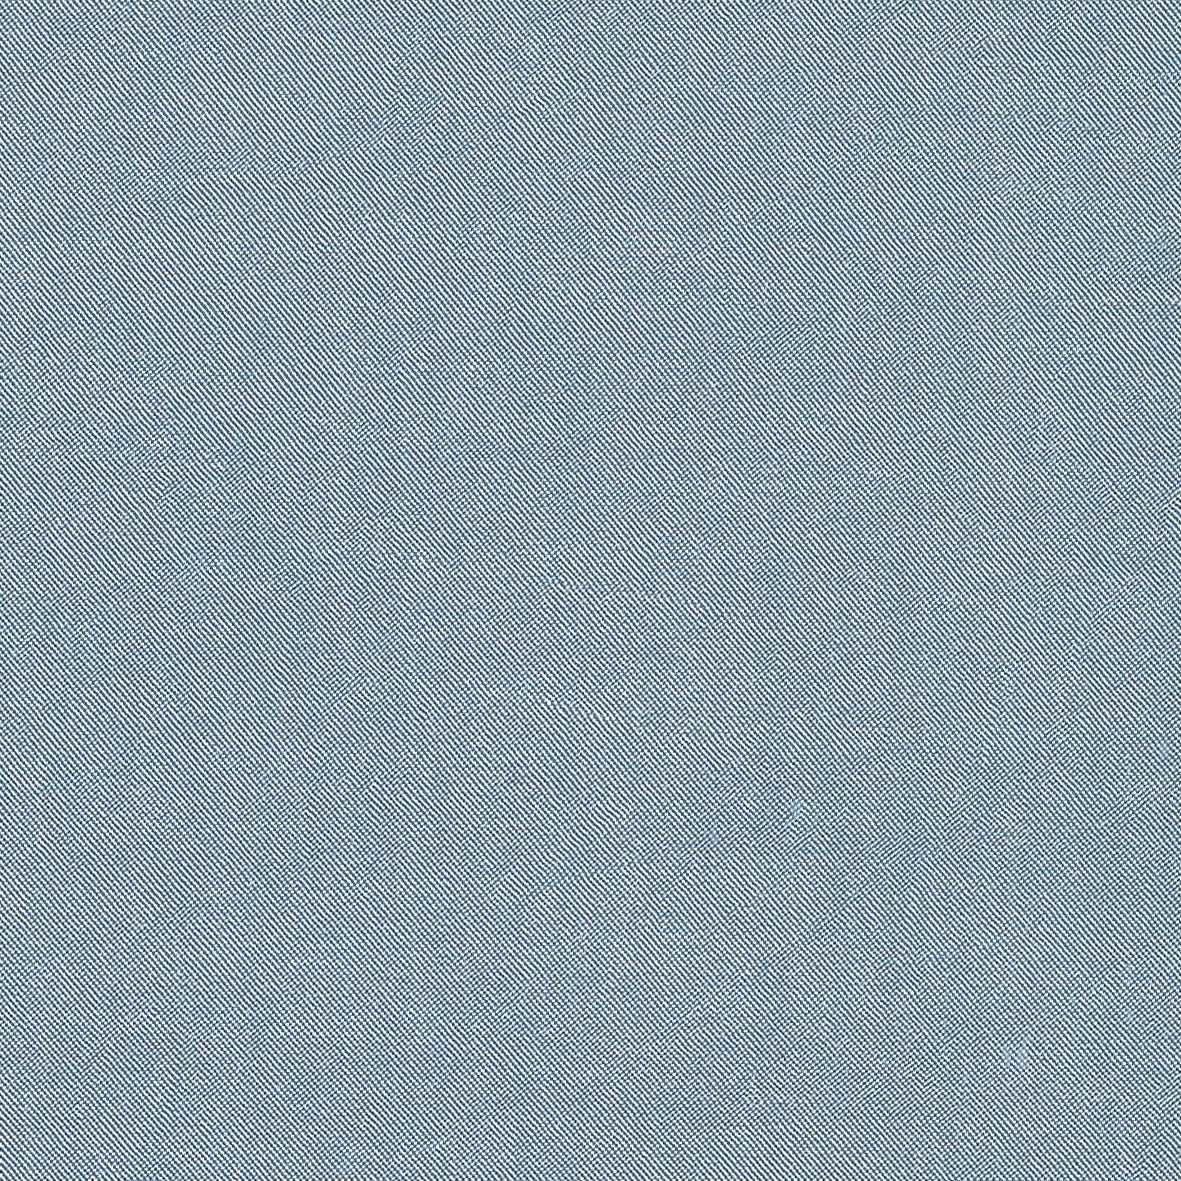 37002-01 Light Blue Polyester Satin Washed Plain Dyed 100% blue plain dyed polyester satin washed woven Satin - knit fabric - woven fabric - fabric company - fabric wholesale - fabric b2b - fabric factory - high quality fabric - hong kong fabric - fabric hk - acetate fabric - cotton fabric - linen fabric - metallic fabric - nylon fabric - polyester fabric - spandex fabric - chun wing hing - cwh hk - fabric worldwide ship - 針織布 - 梳織布 - 布料公司- 布料批發 - 香港布料 - 秦榮興